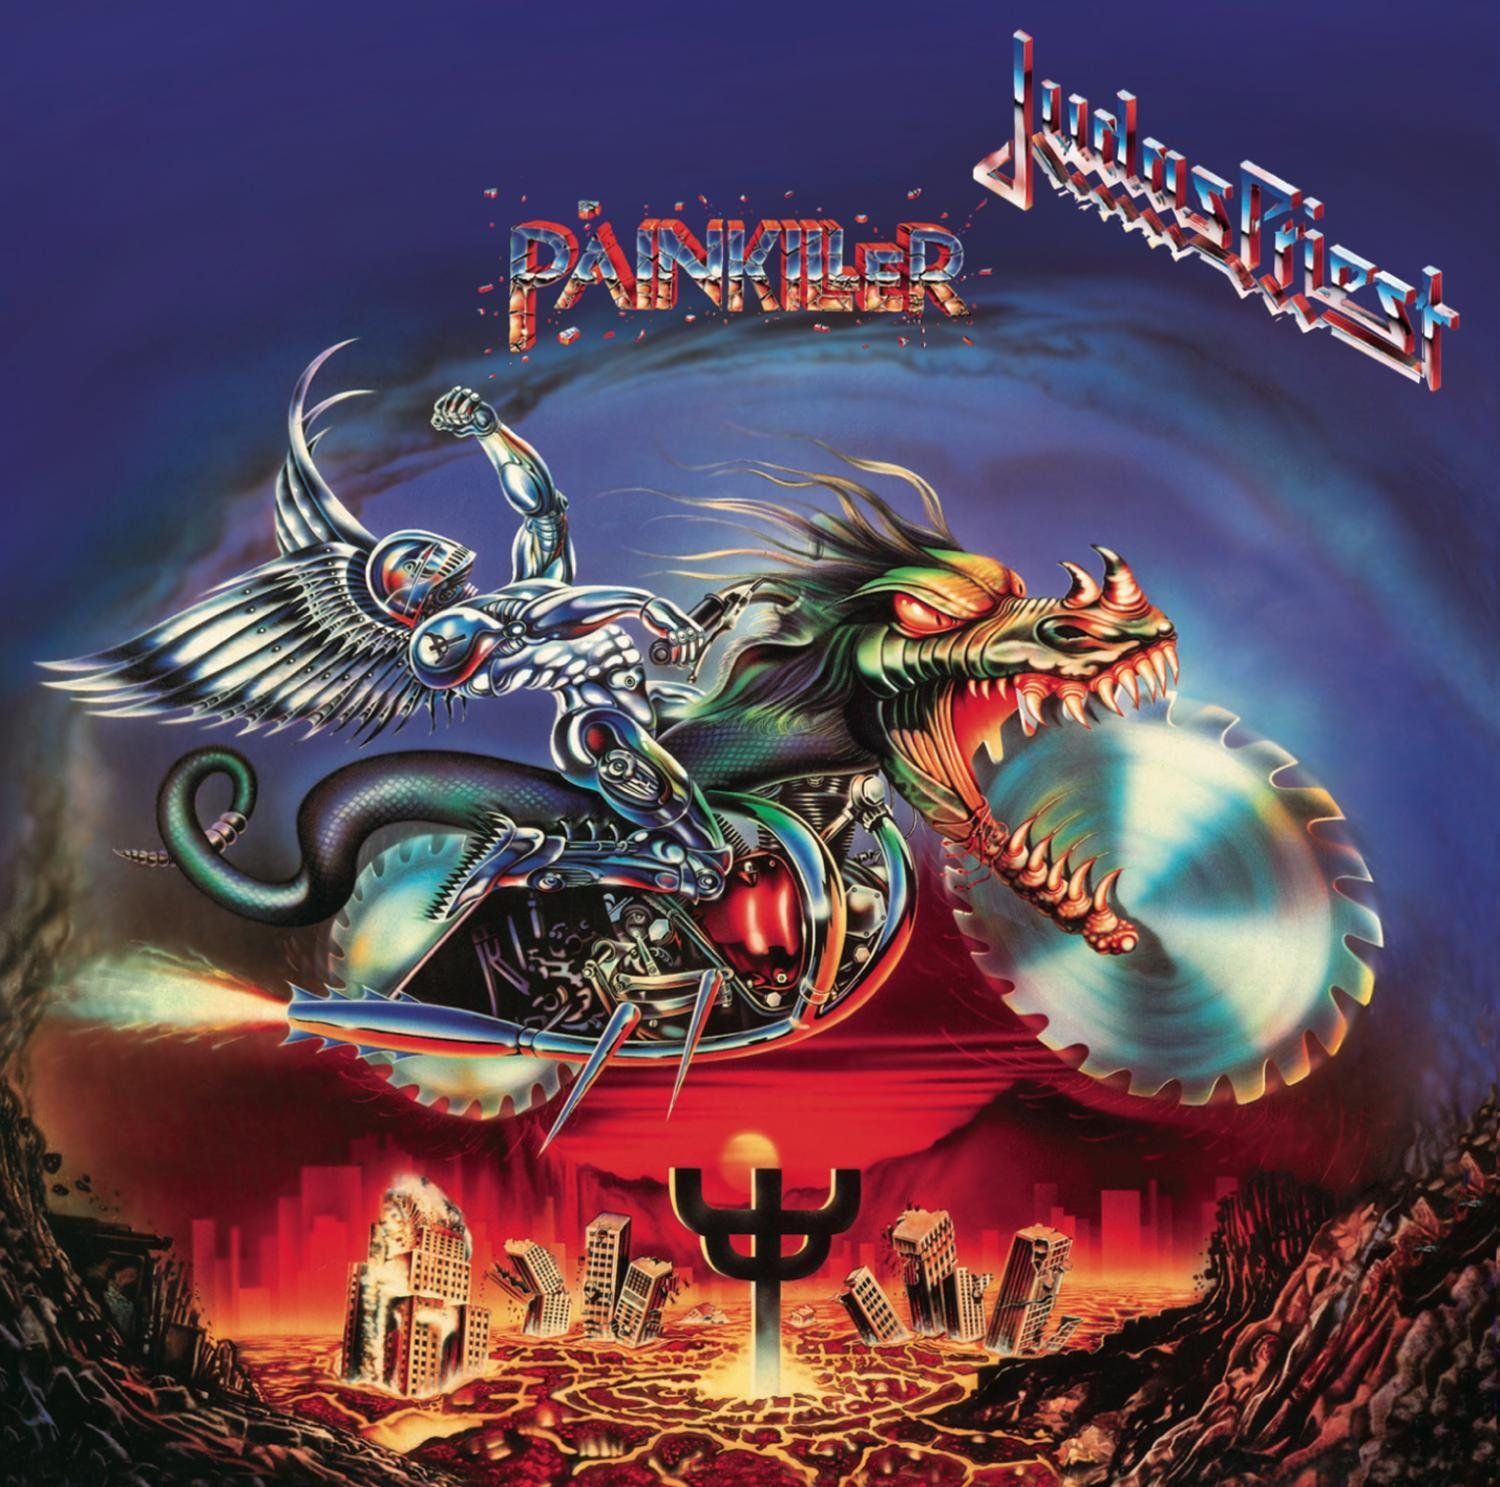 Don Airey spielte Bass auf "Painkiller" von Judas Priest